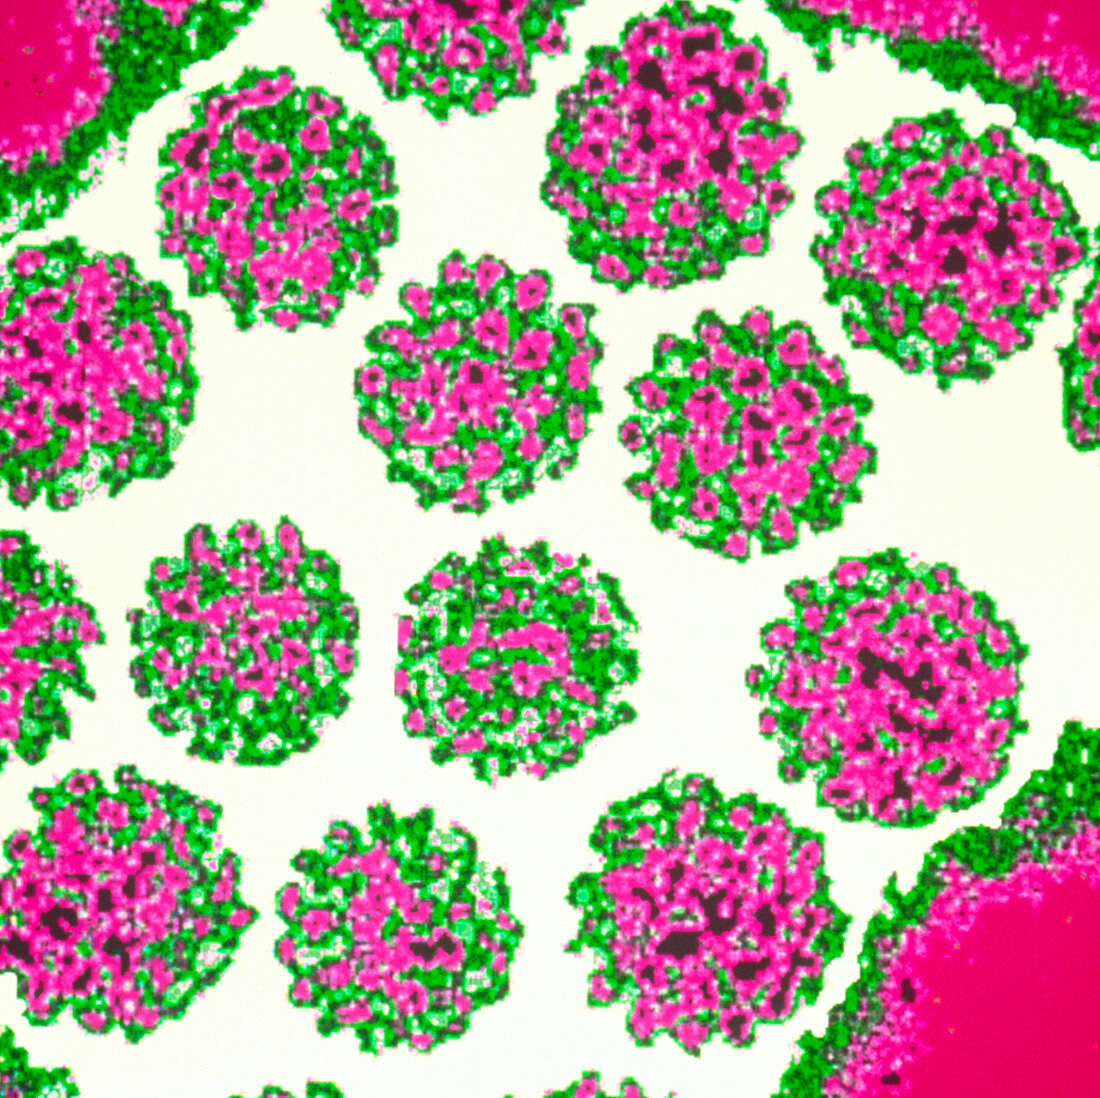 Coloured TEM of Papilloma viruses